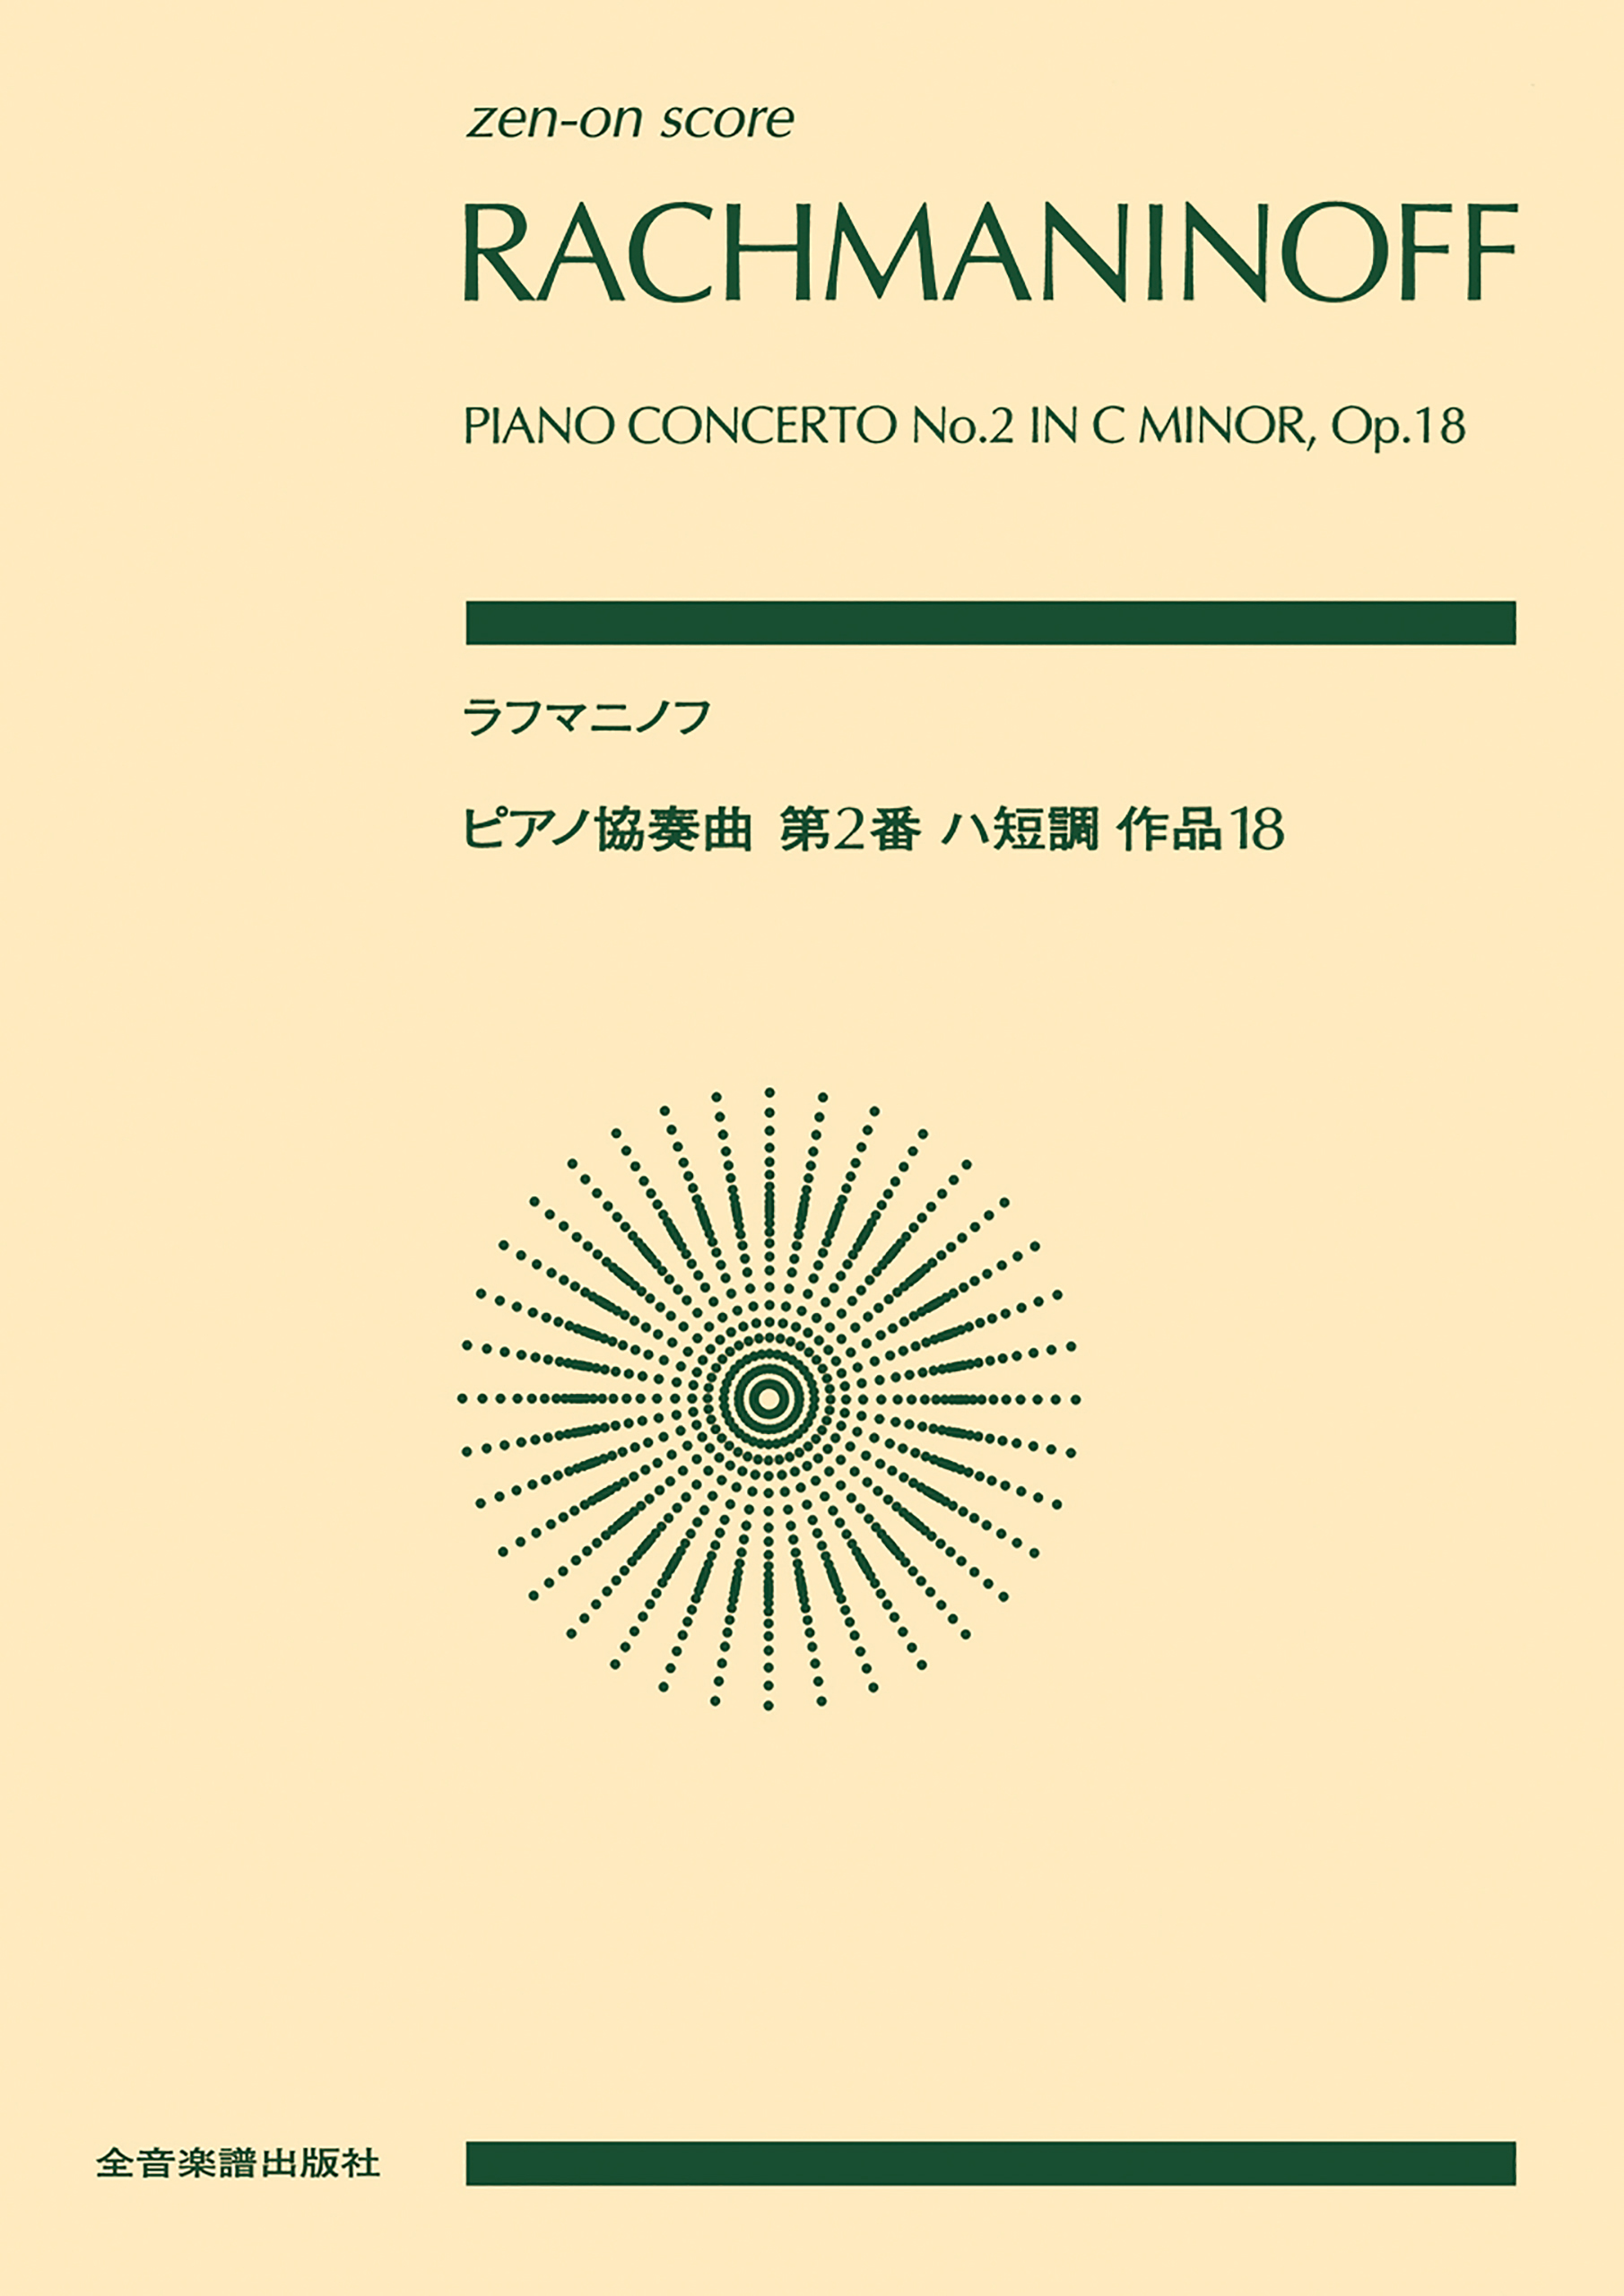 ラフマニノフ:ピアノ協奏曲第2番【並行輸入品】 - クラシック